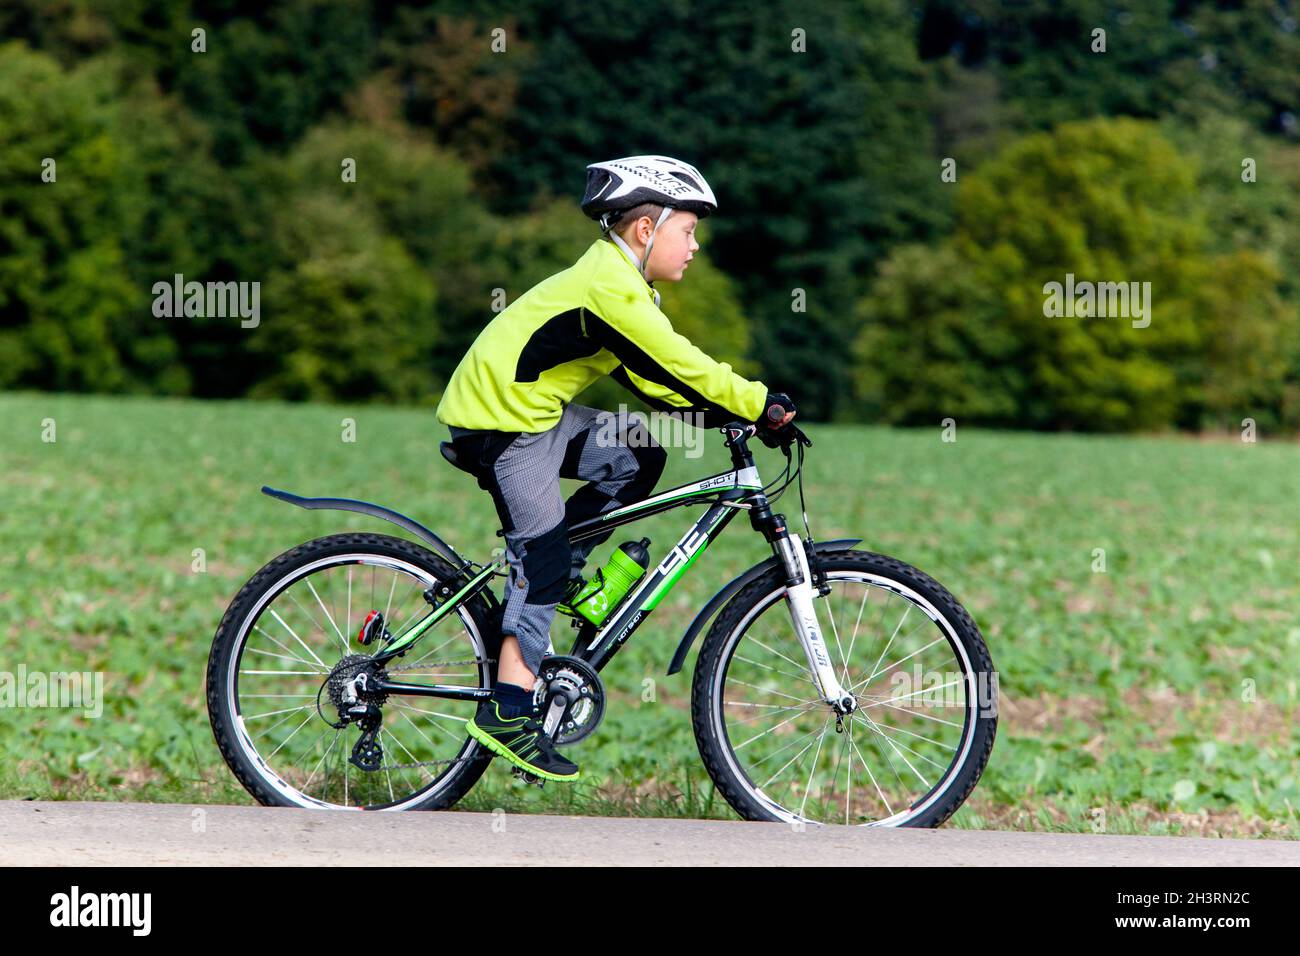 Kind Fahrrad im Helm reiten, Junge reiten biike, Seitenansicht Stockfoto